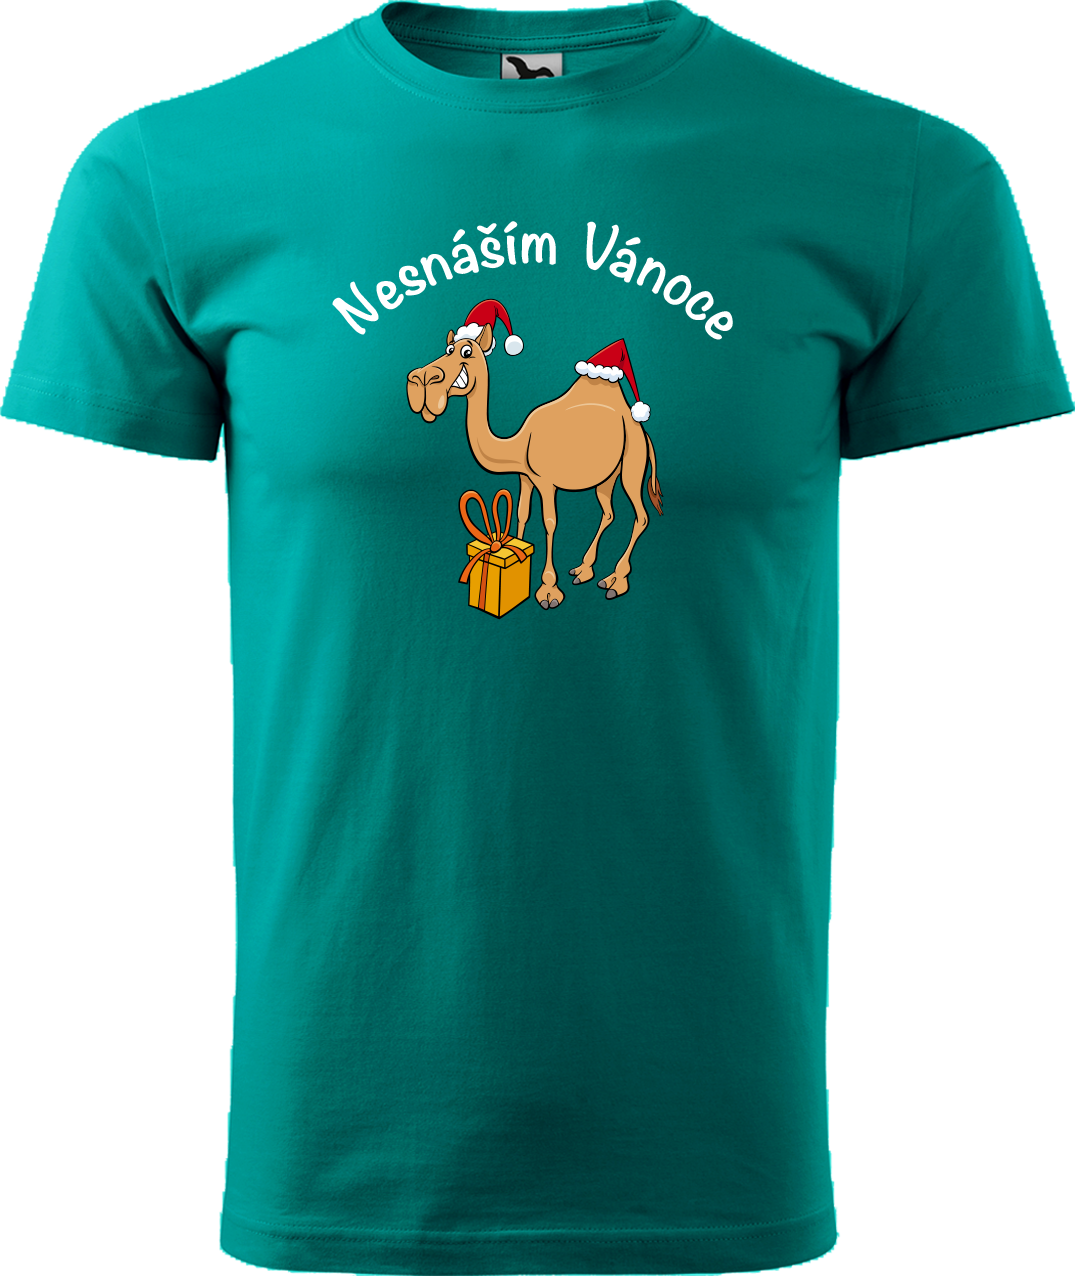 Pánské vánoční tričko - Nesnáším Vánoce Velikost: L, Barva: Emerald (19)